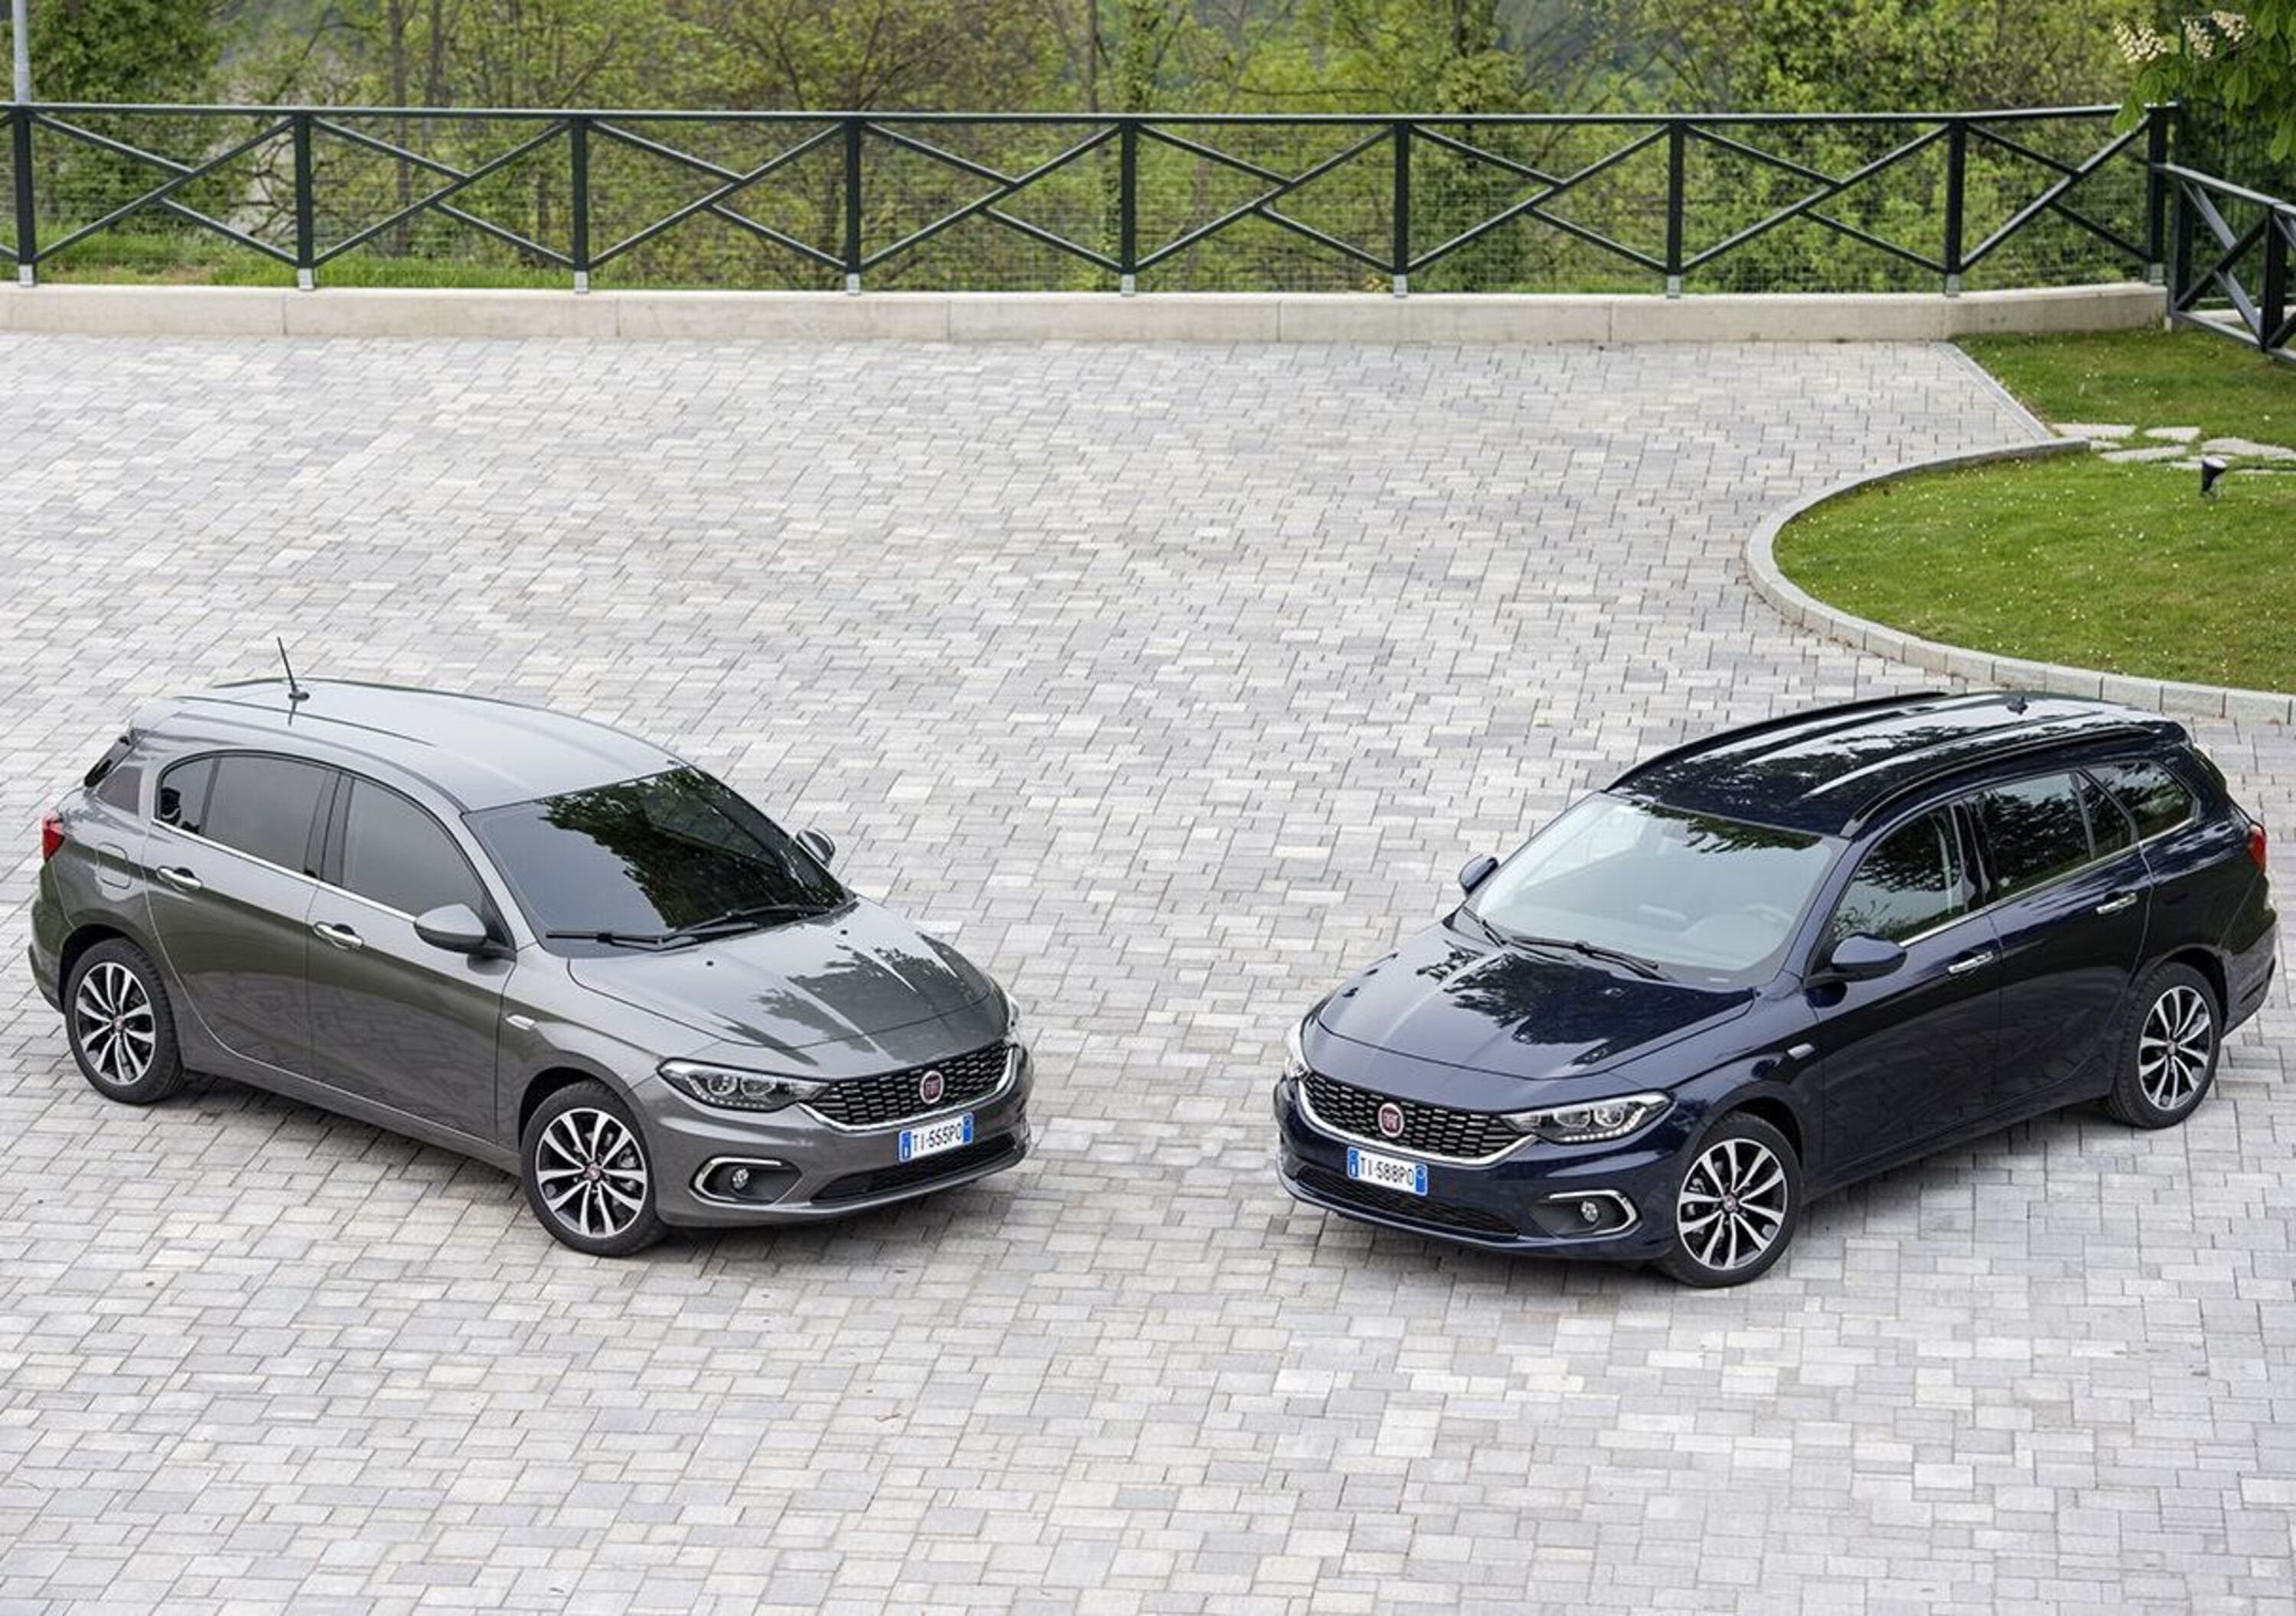 Vendite luglio: Fiat Tipo supera VW Golf, trend positivo per Alfa Giulia